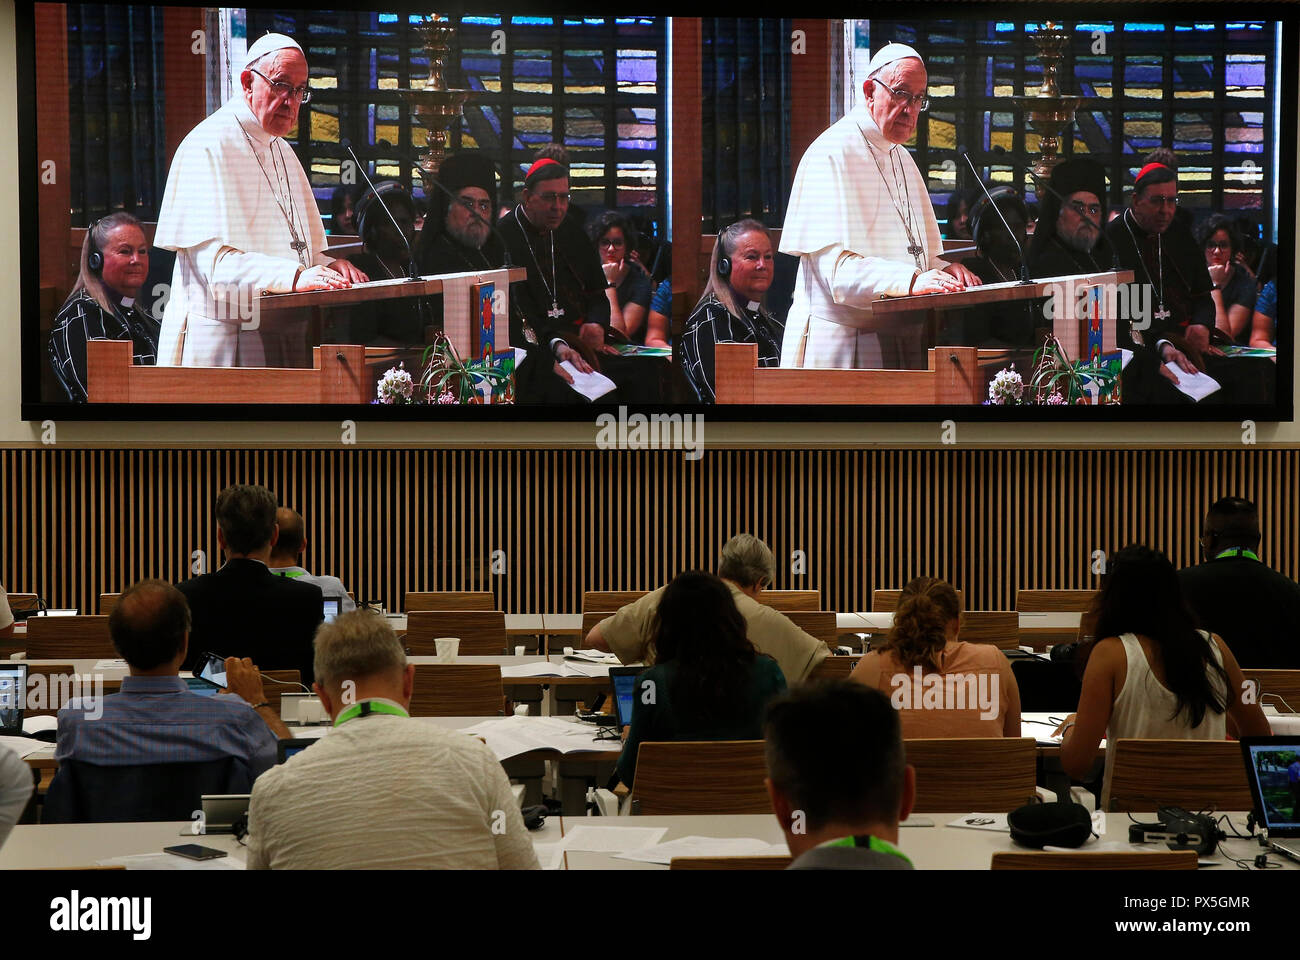 El 21 de junio de 2018, el Consejo Mundial de Iglesias recibe la visita del Papa a Francisco de la Iglesia Católica Romana. Oración ecuménica vista desde th Foto de stock